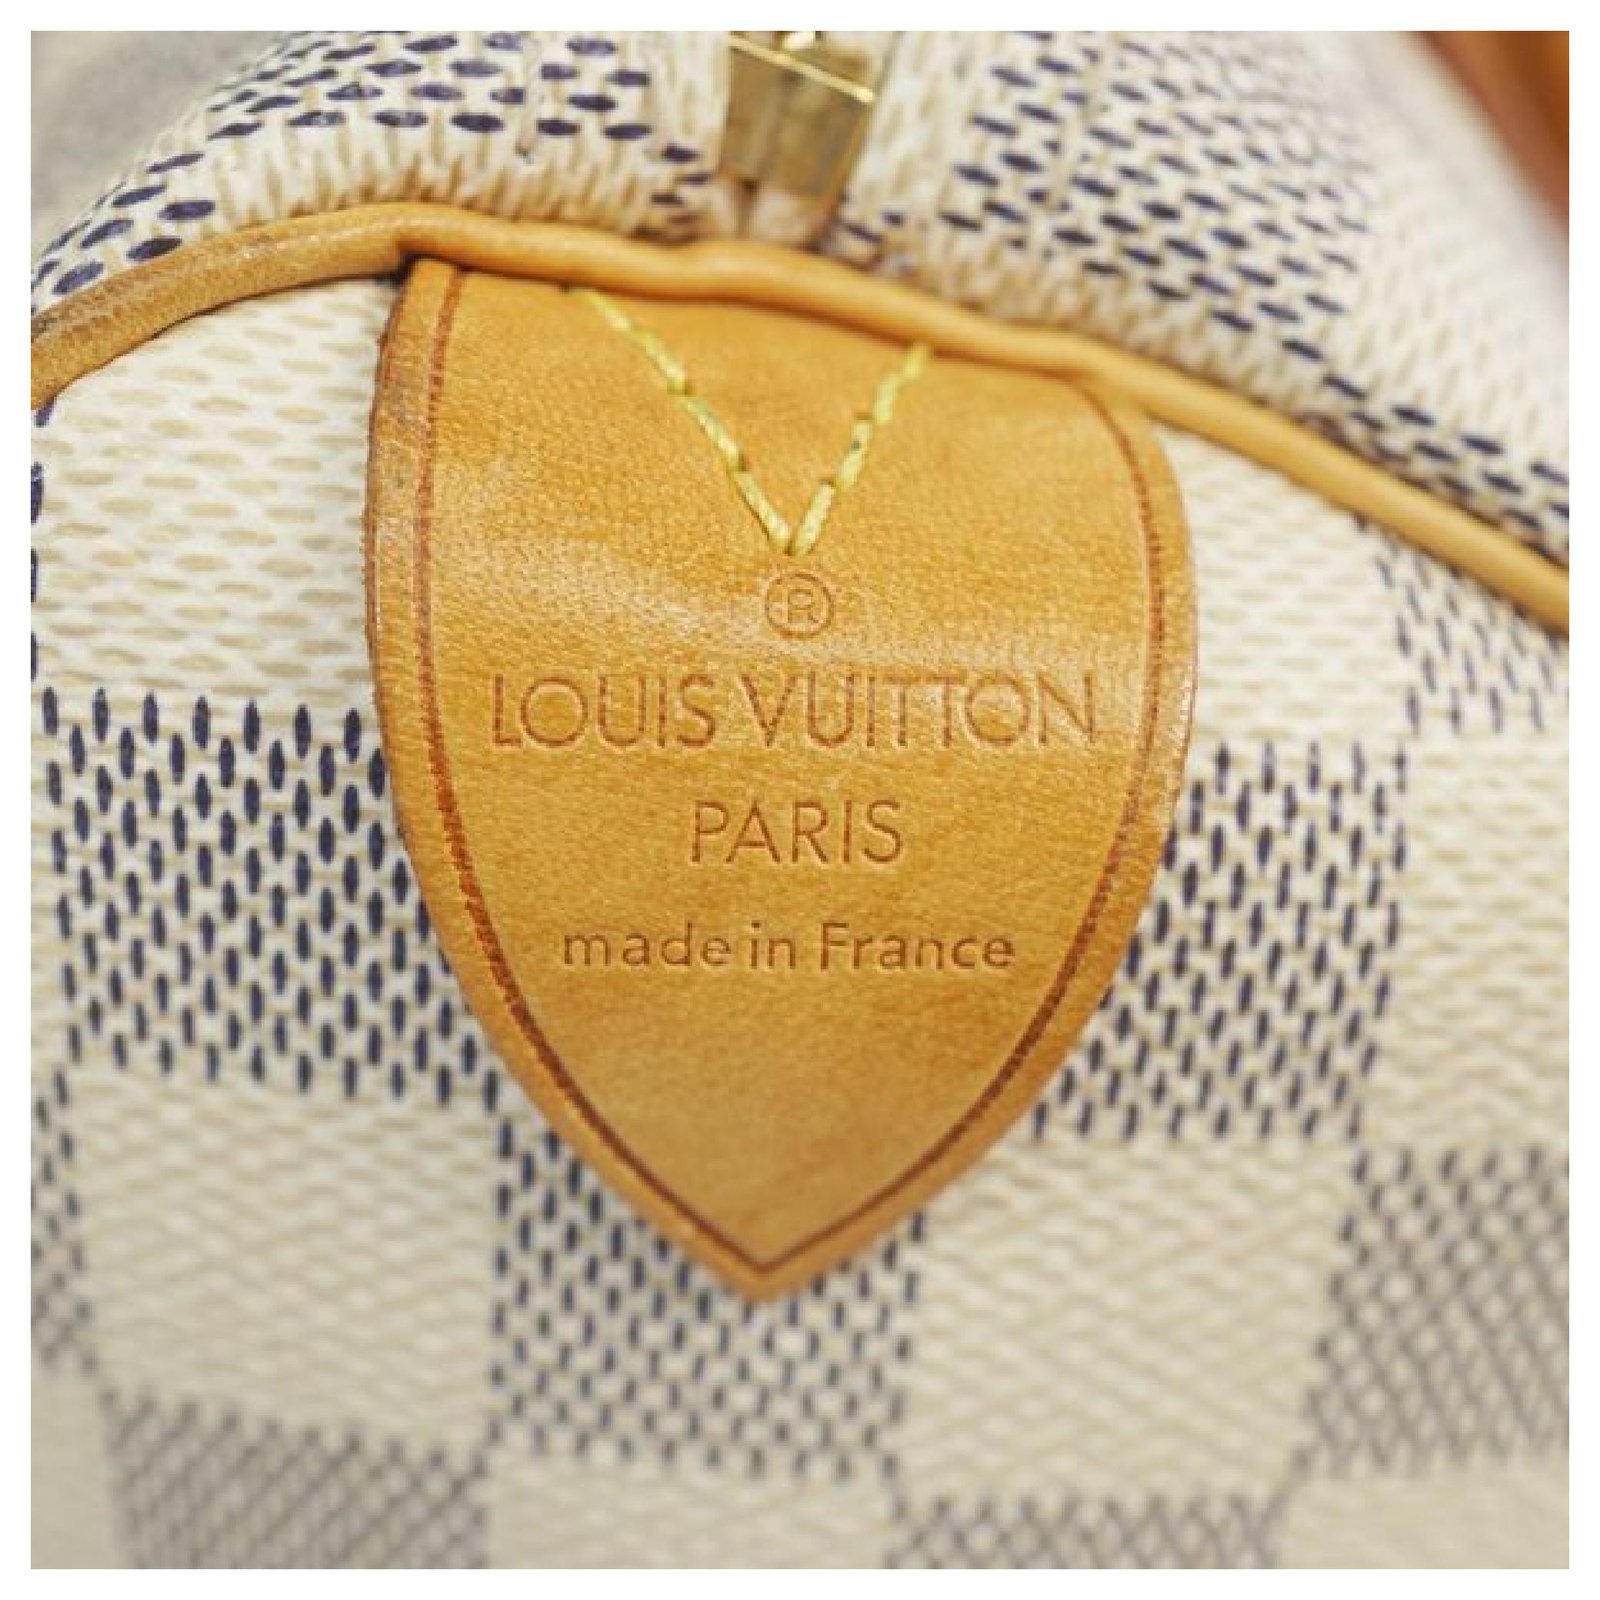 NEW! Genuine Louis Vuitton Damier Azur Canvas N41371 SPEEDY 25